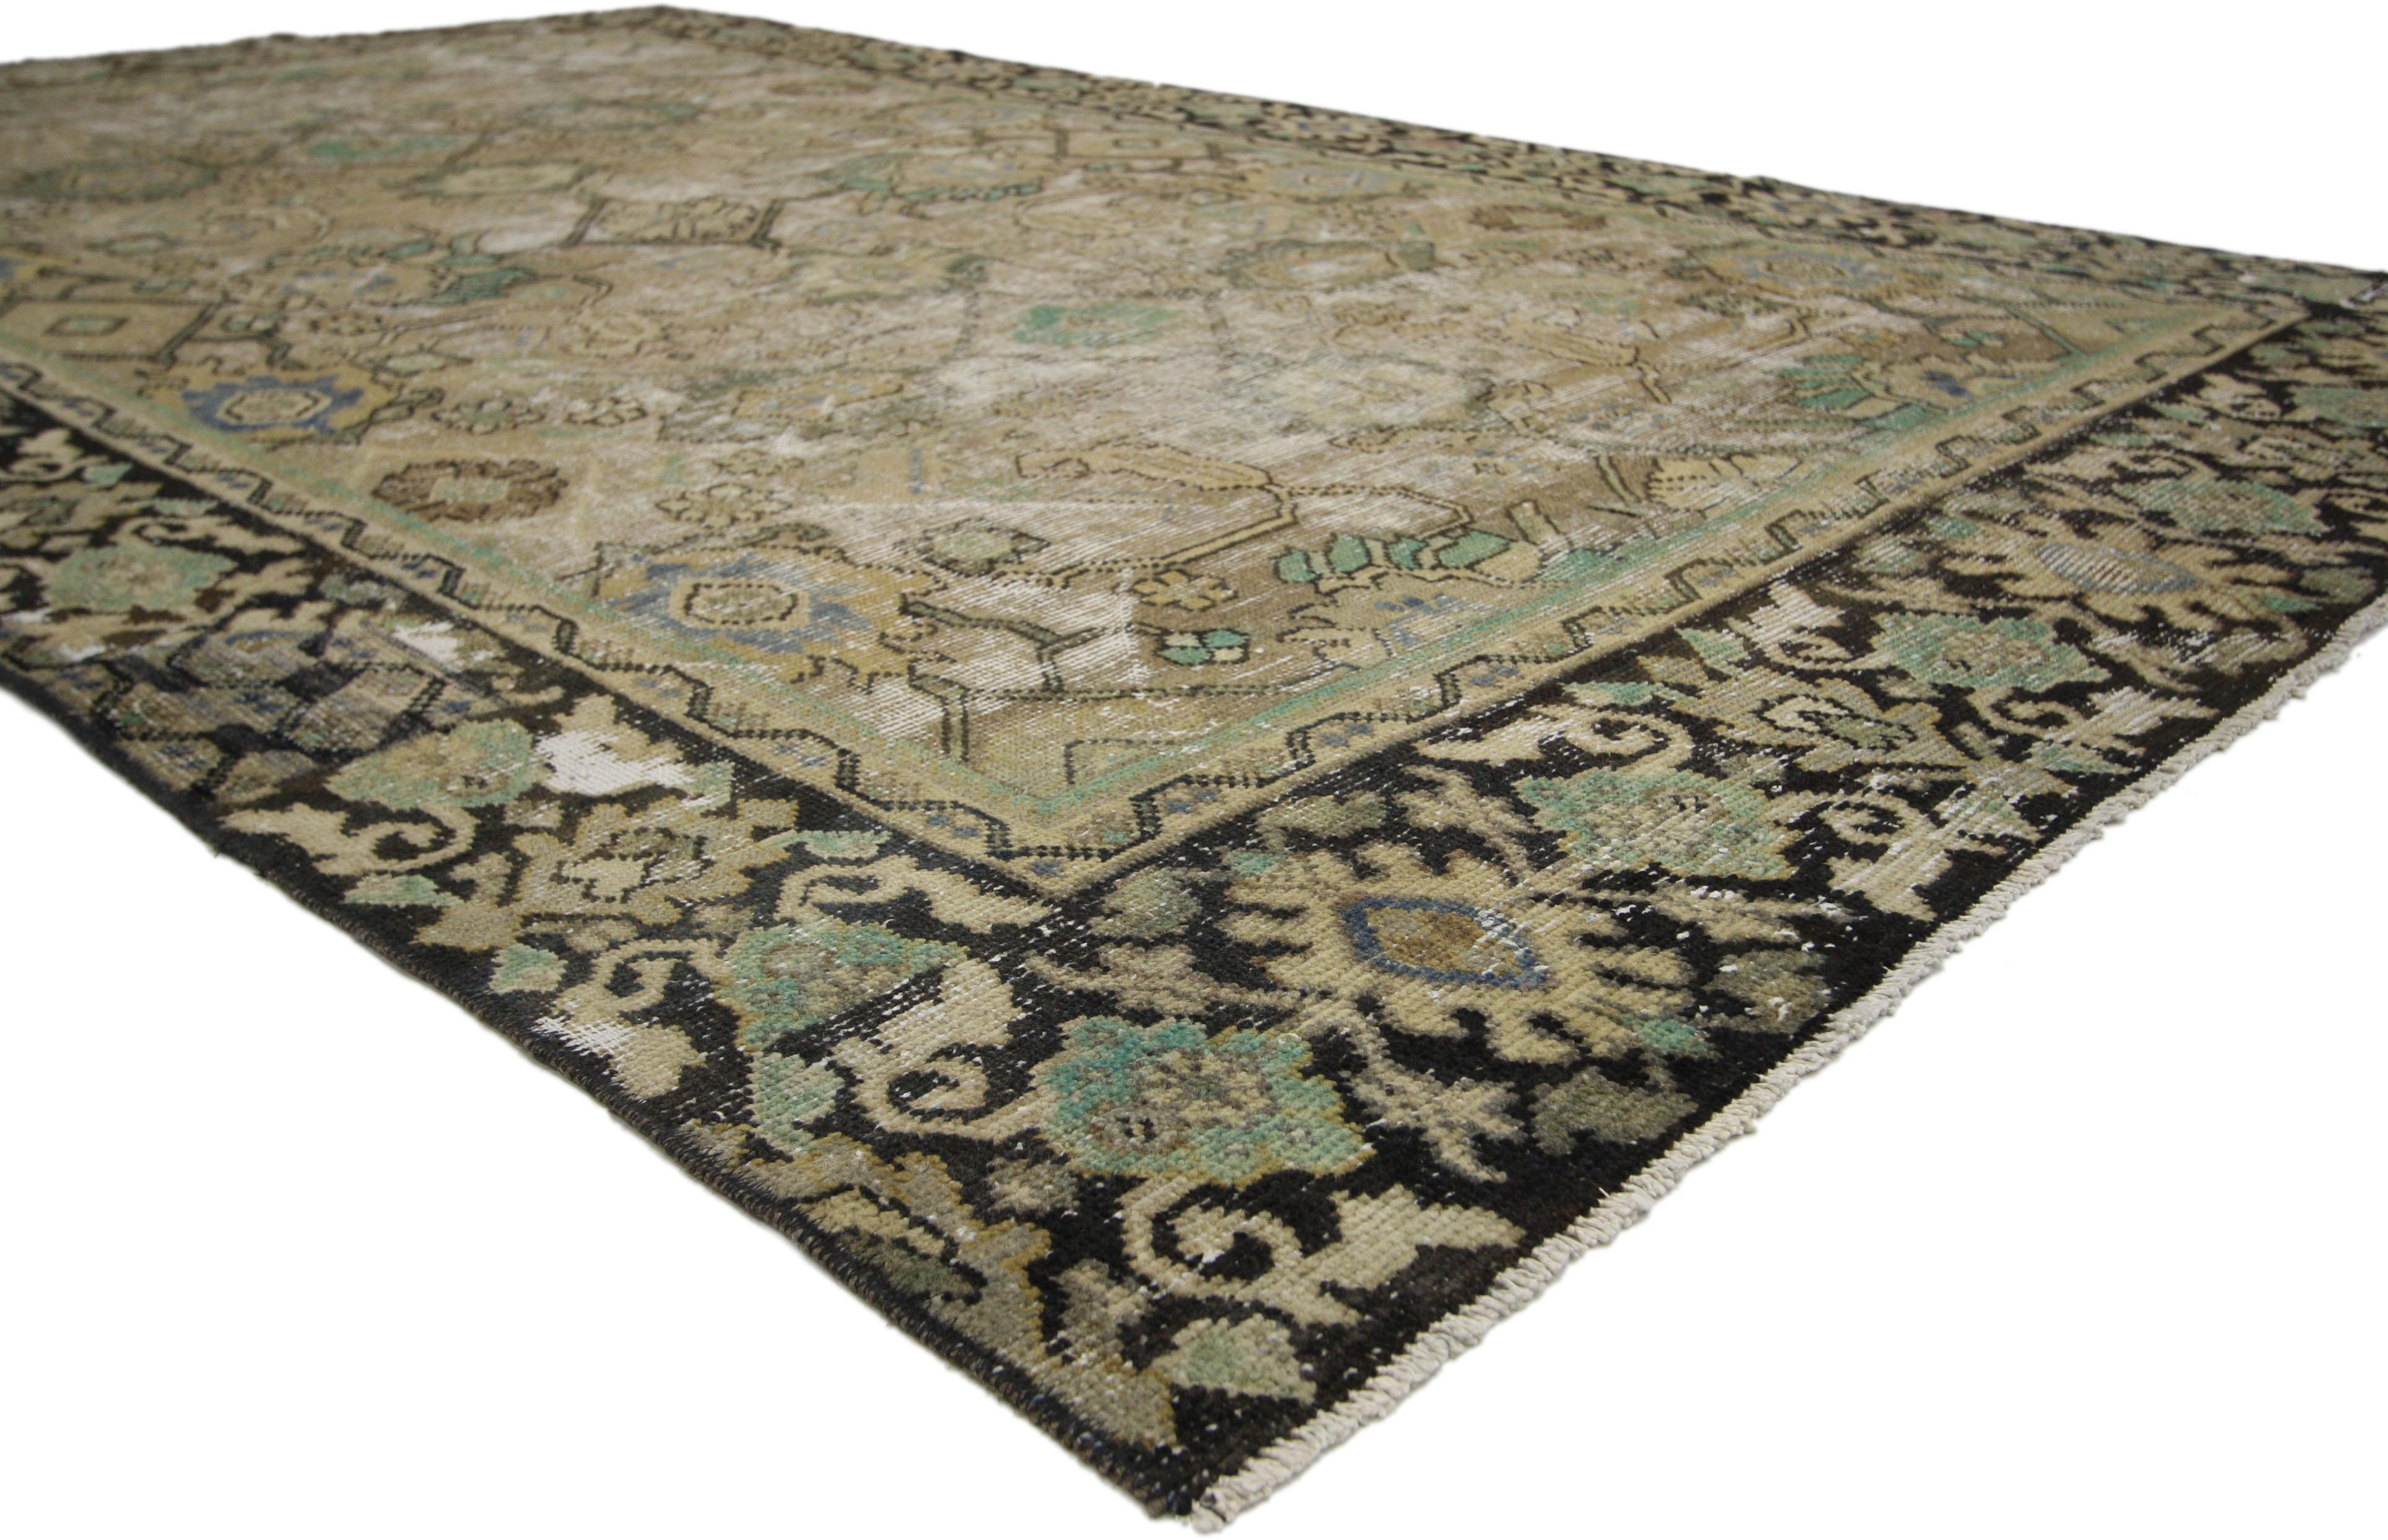 60681, tapis persan Mahal ancien et usé, de style rustique anglais traditionnel. Avec son charme parfaitement usé et sa sensibilité rustique, ce tapis persan Mahal ancien en laine nouée à la main et en mauvais état prendra un aspect vieilli qui